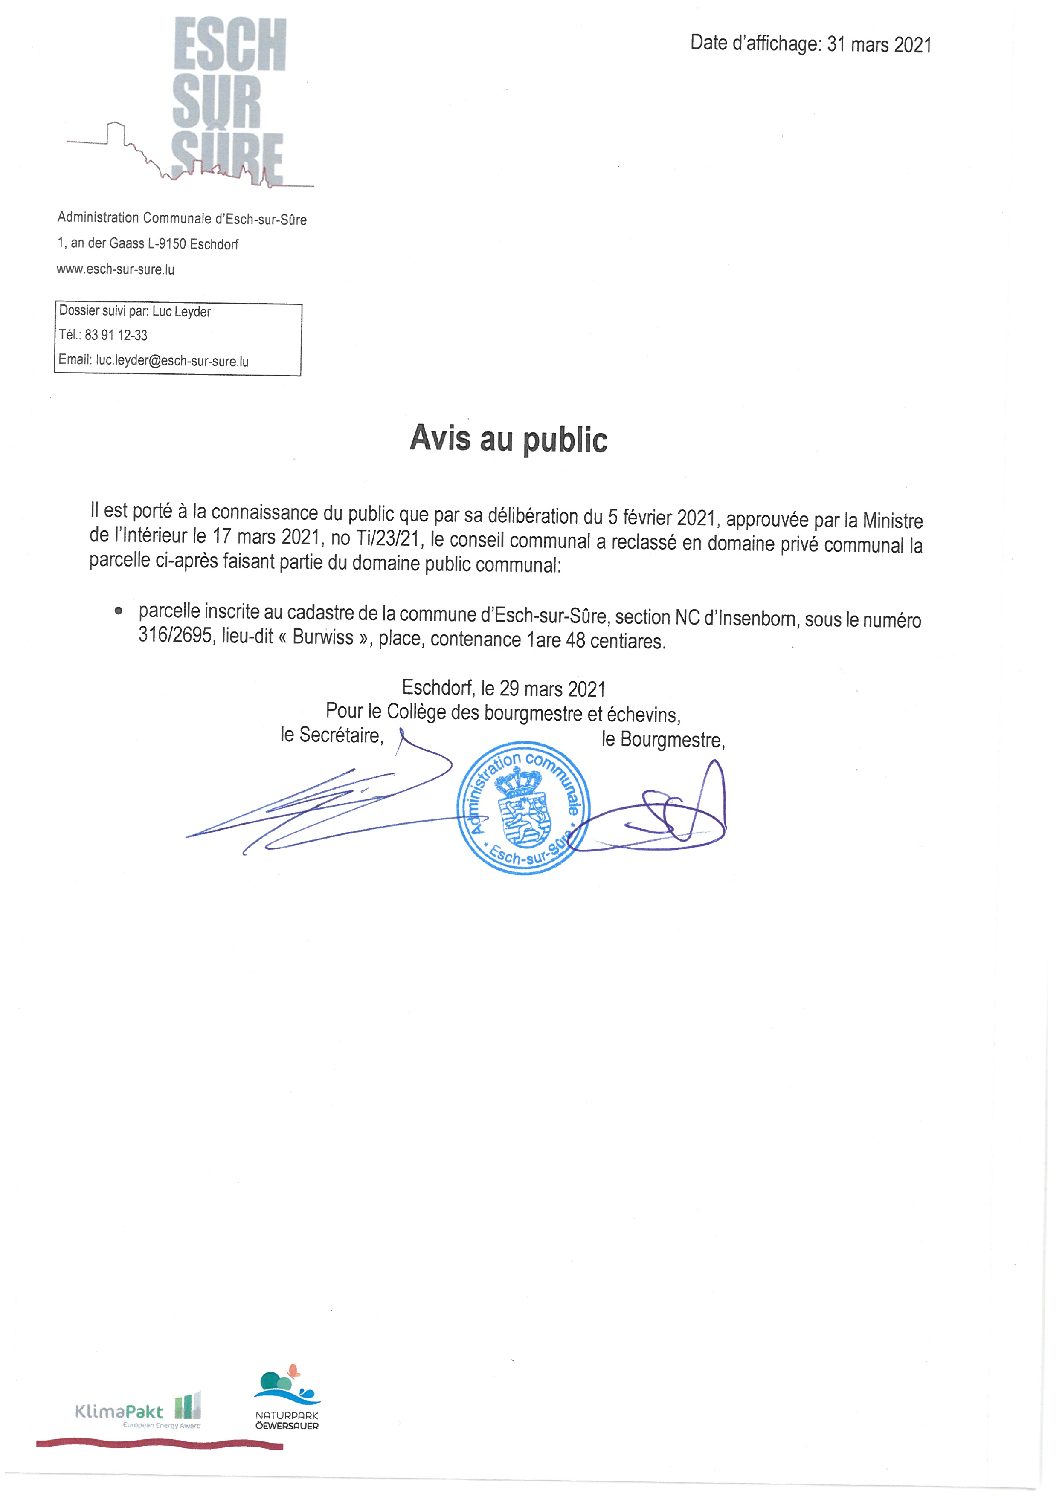 2021.03.31_Avis au public - Reclassement parcelle section NC d'Insenborn (Burwiss)